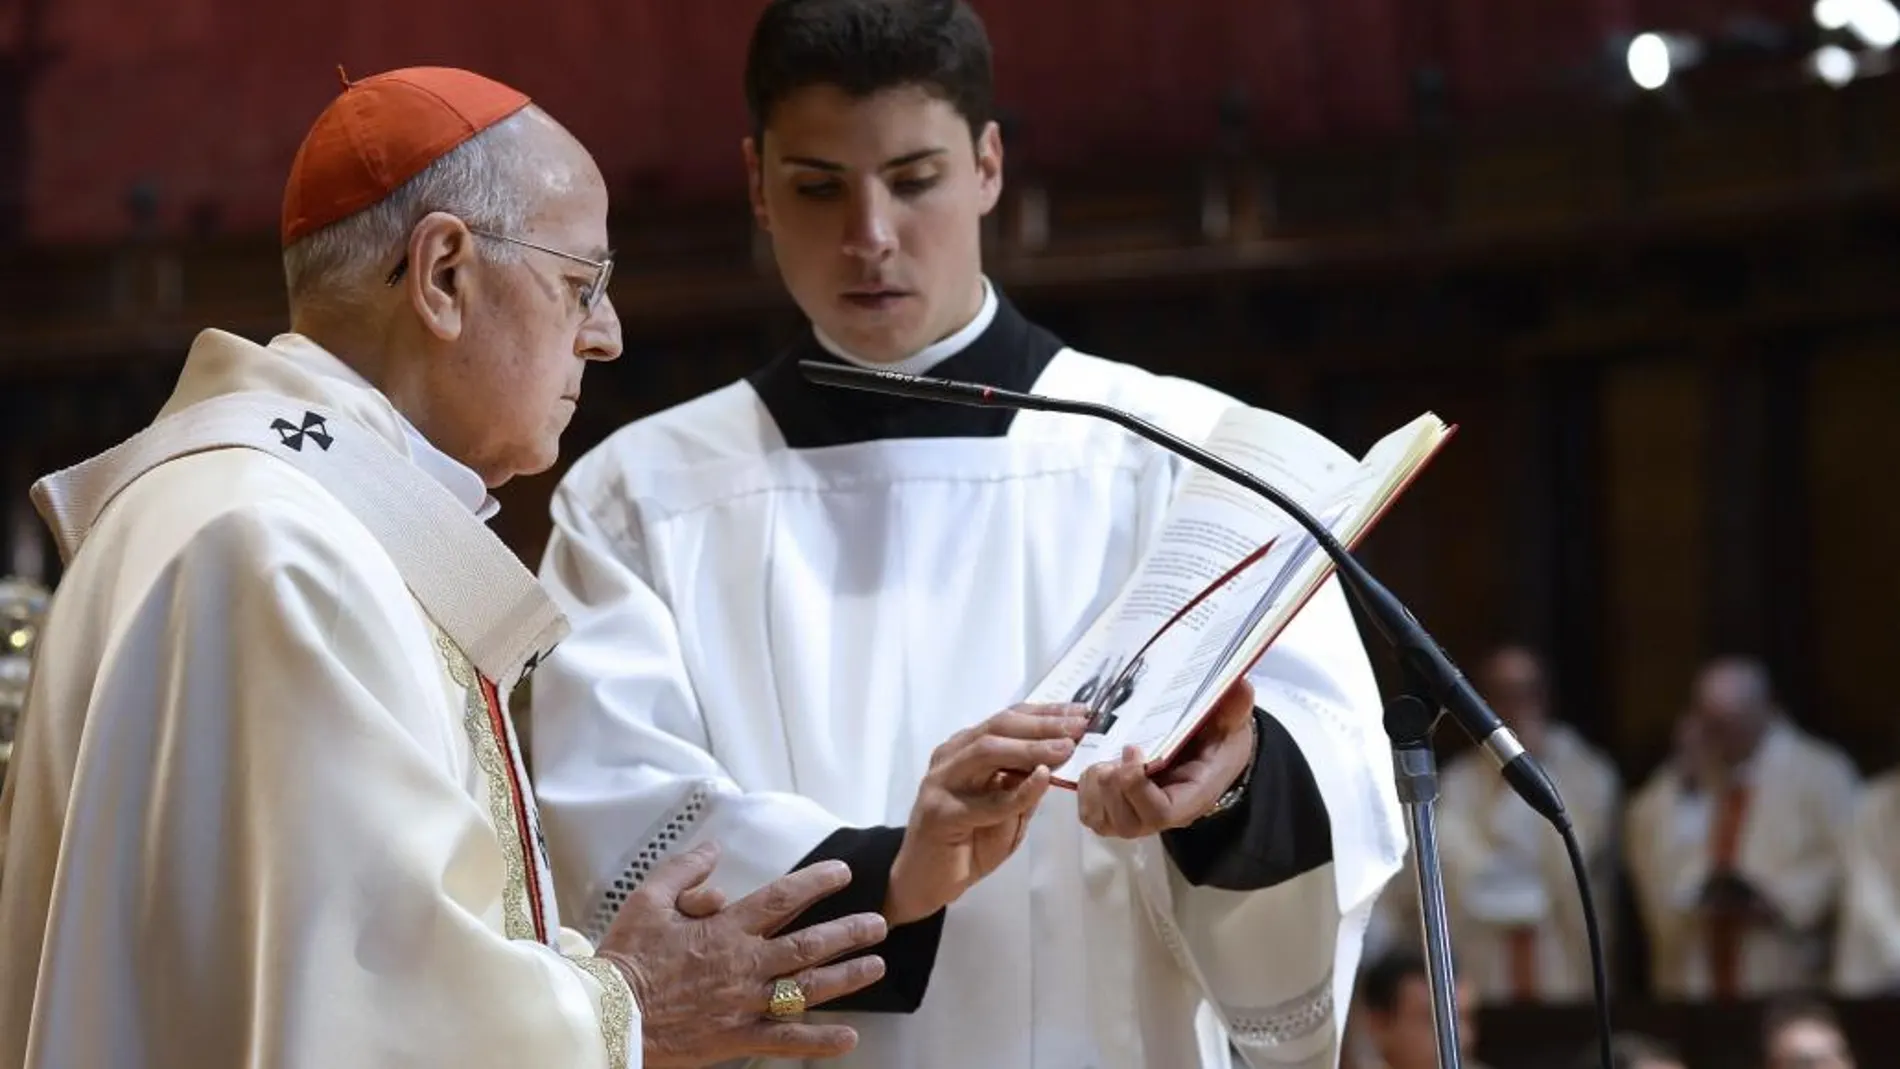 El cardenal Ricardo Blázquez preside la eucaristía en la catedral de Valladolid, en el día de su 75 cumpleaños.